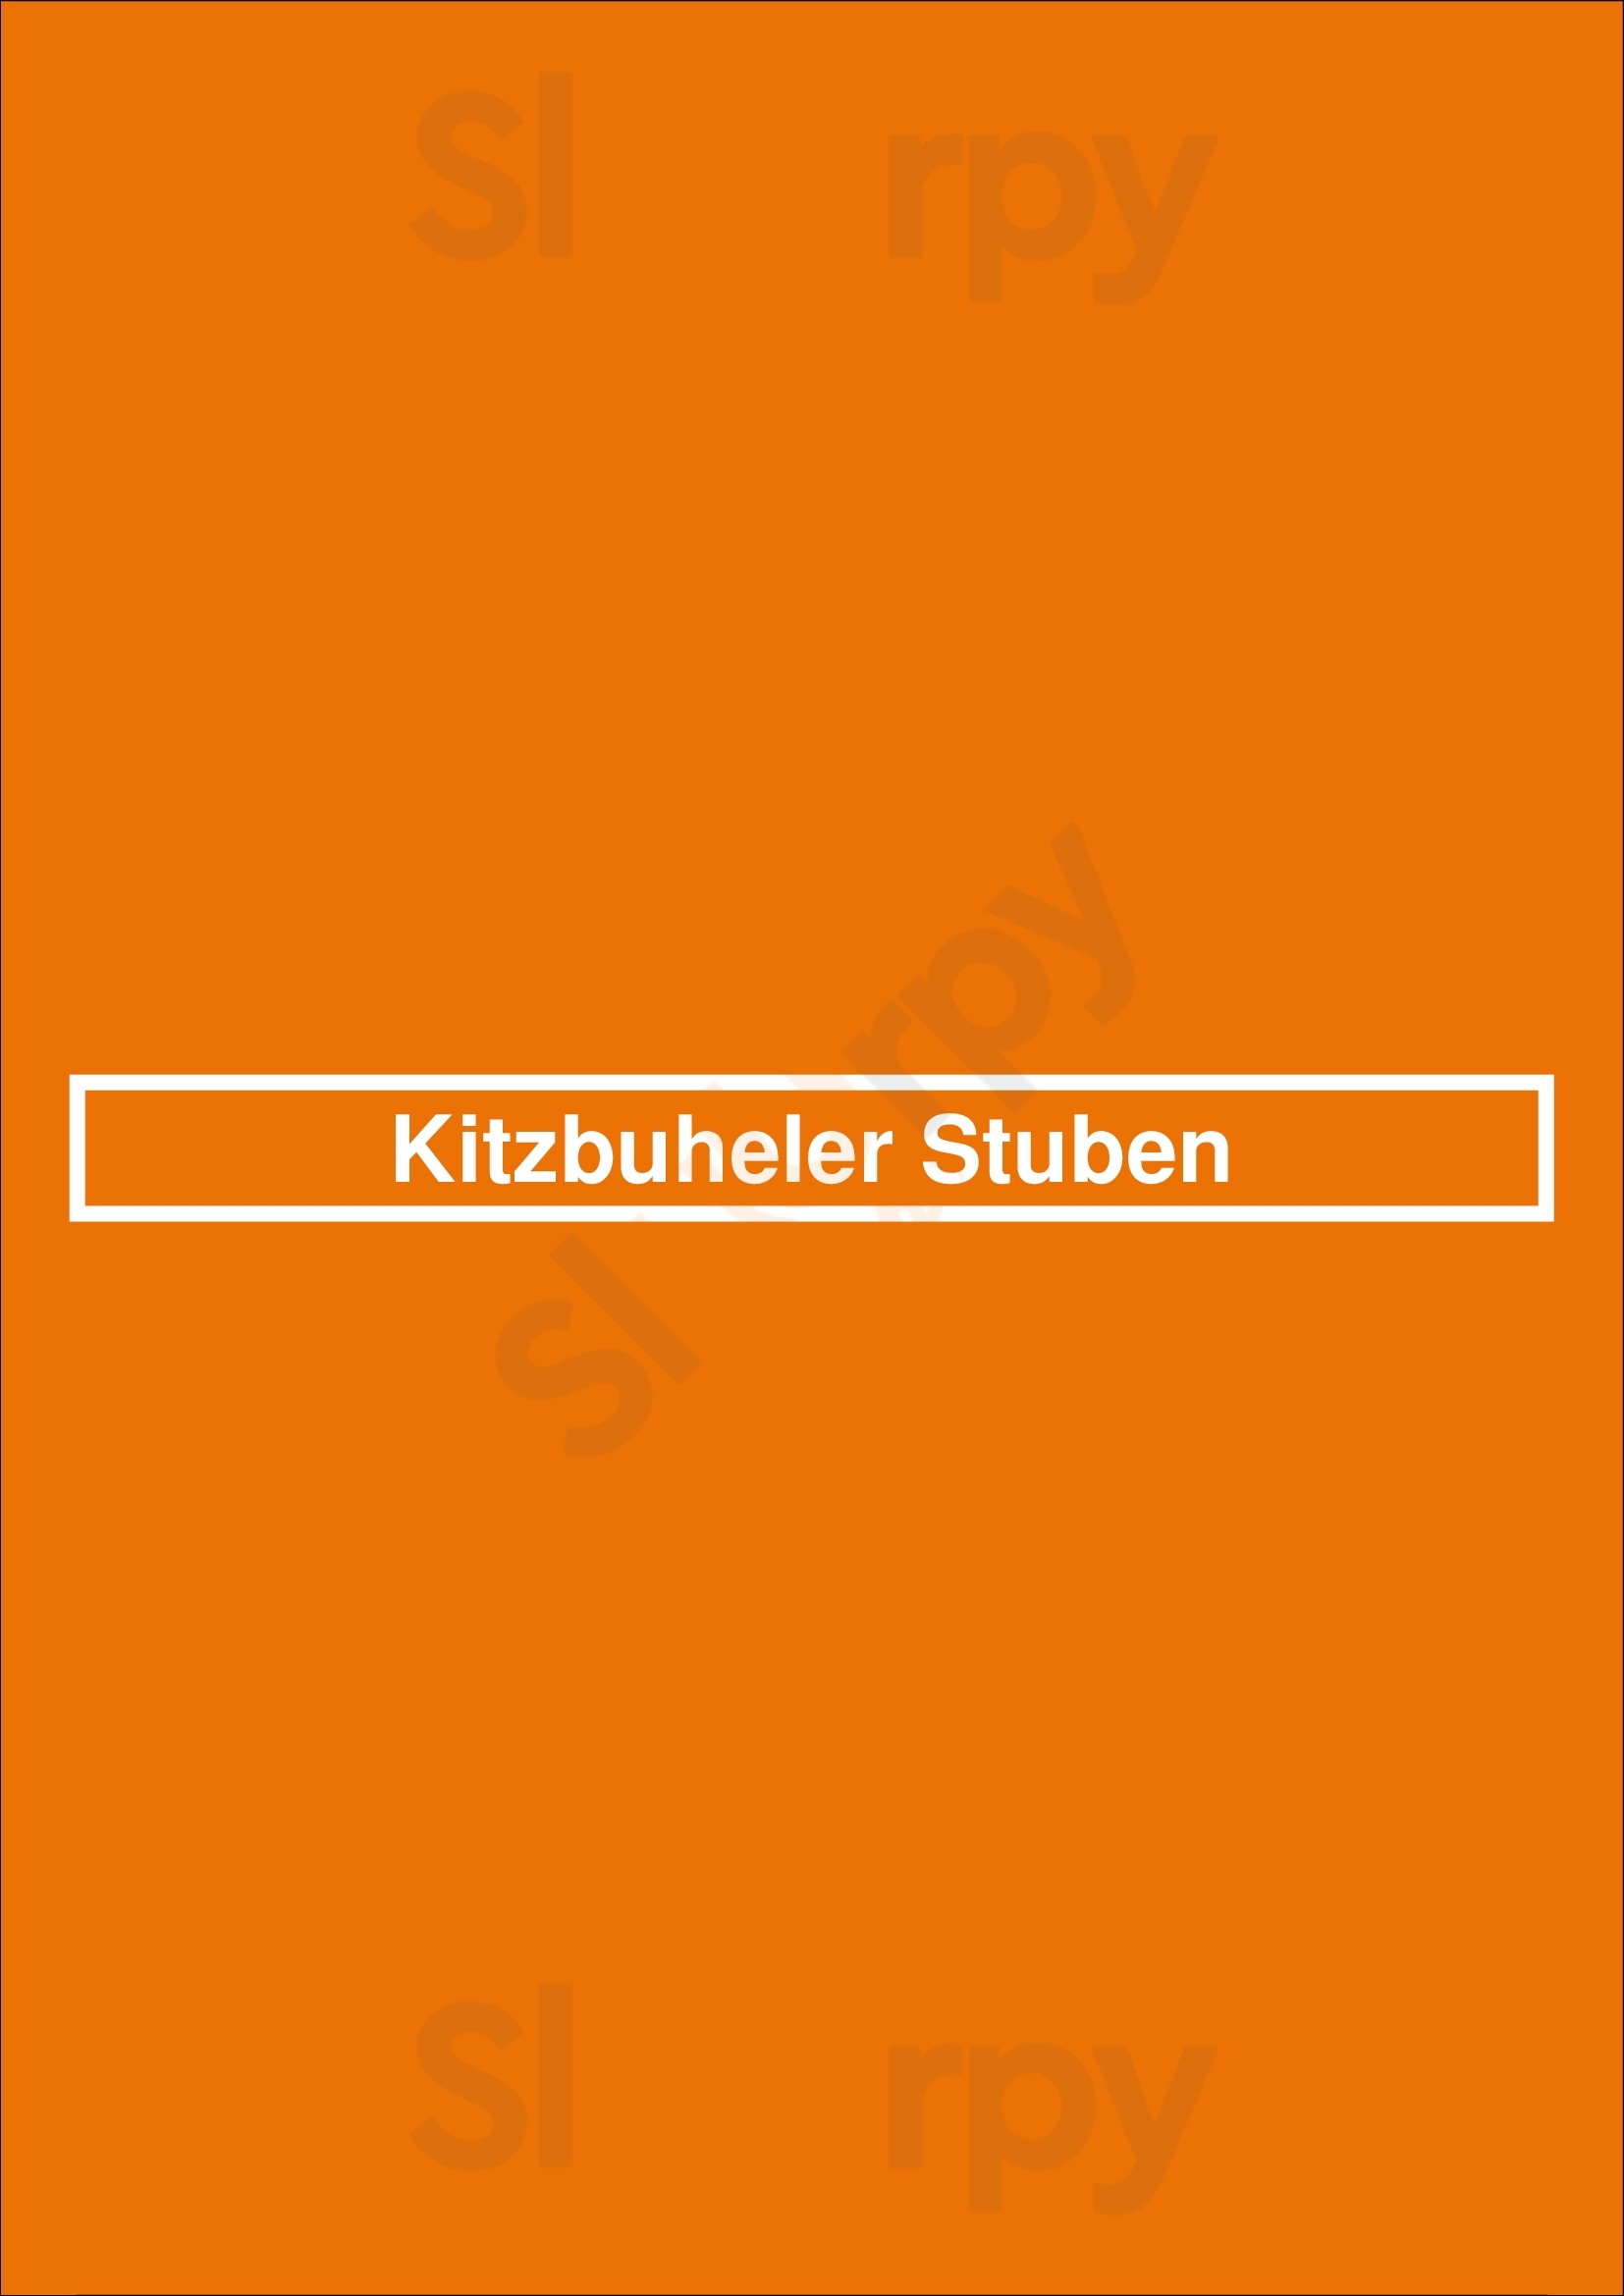 Kitzbuheler Stuben Düsseldorf Menu - 1